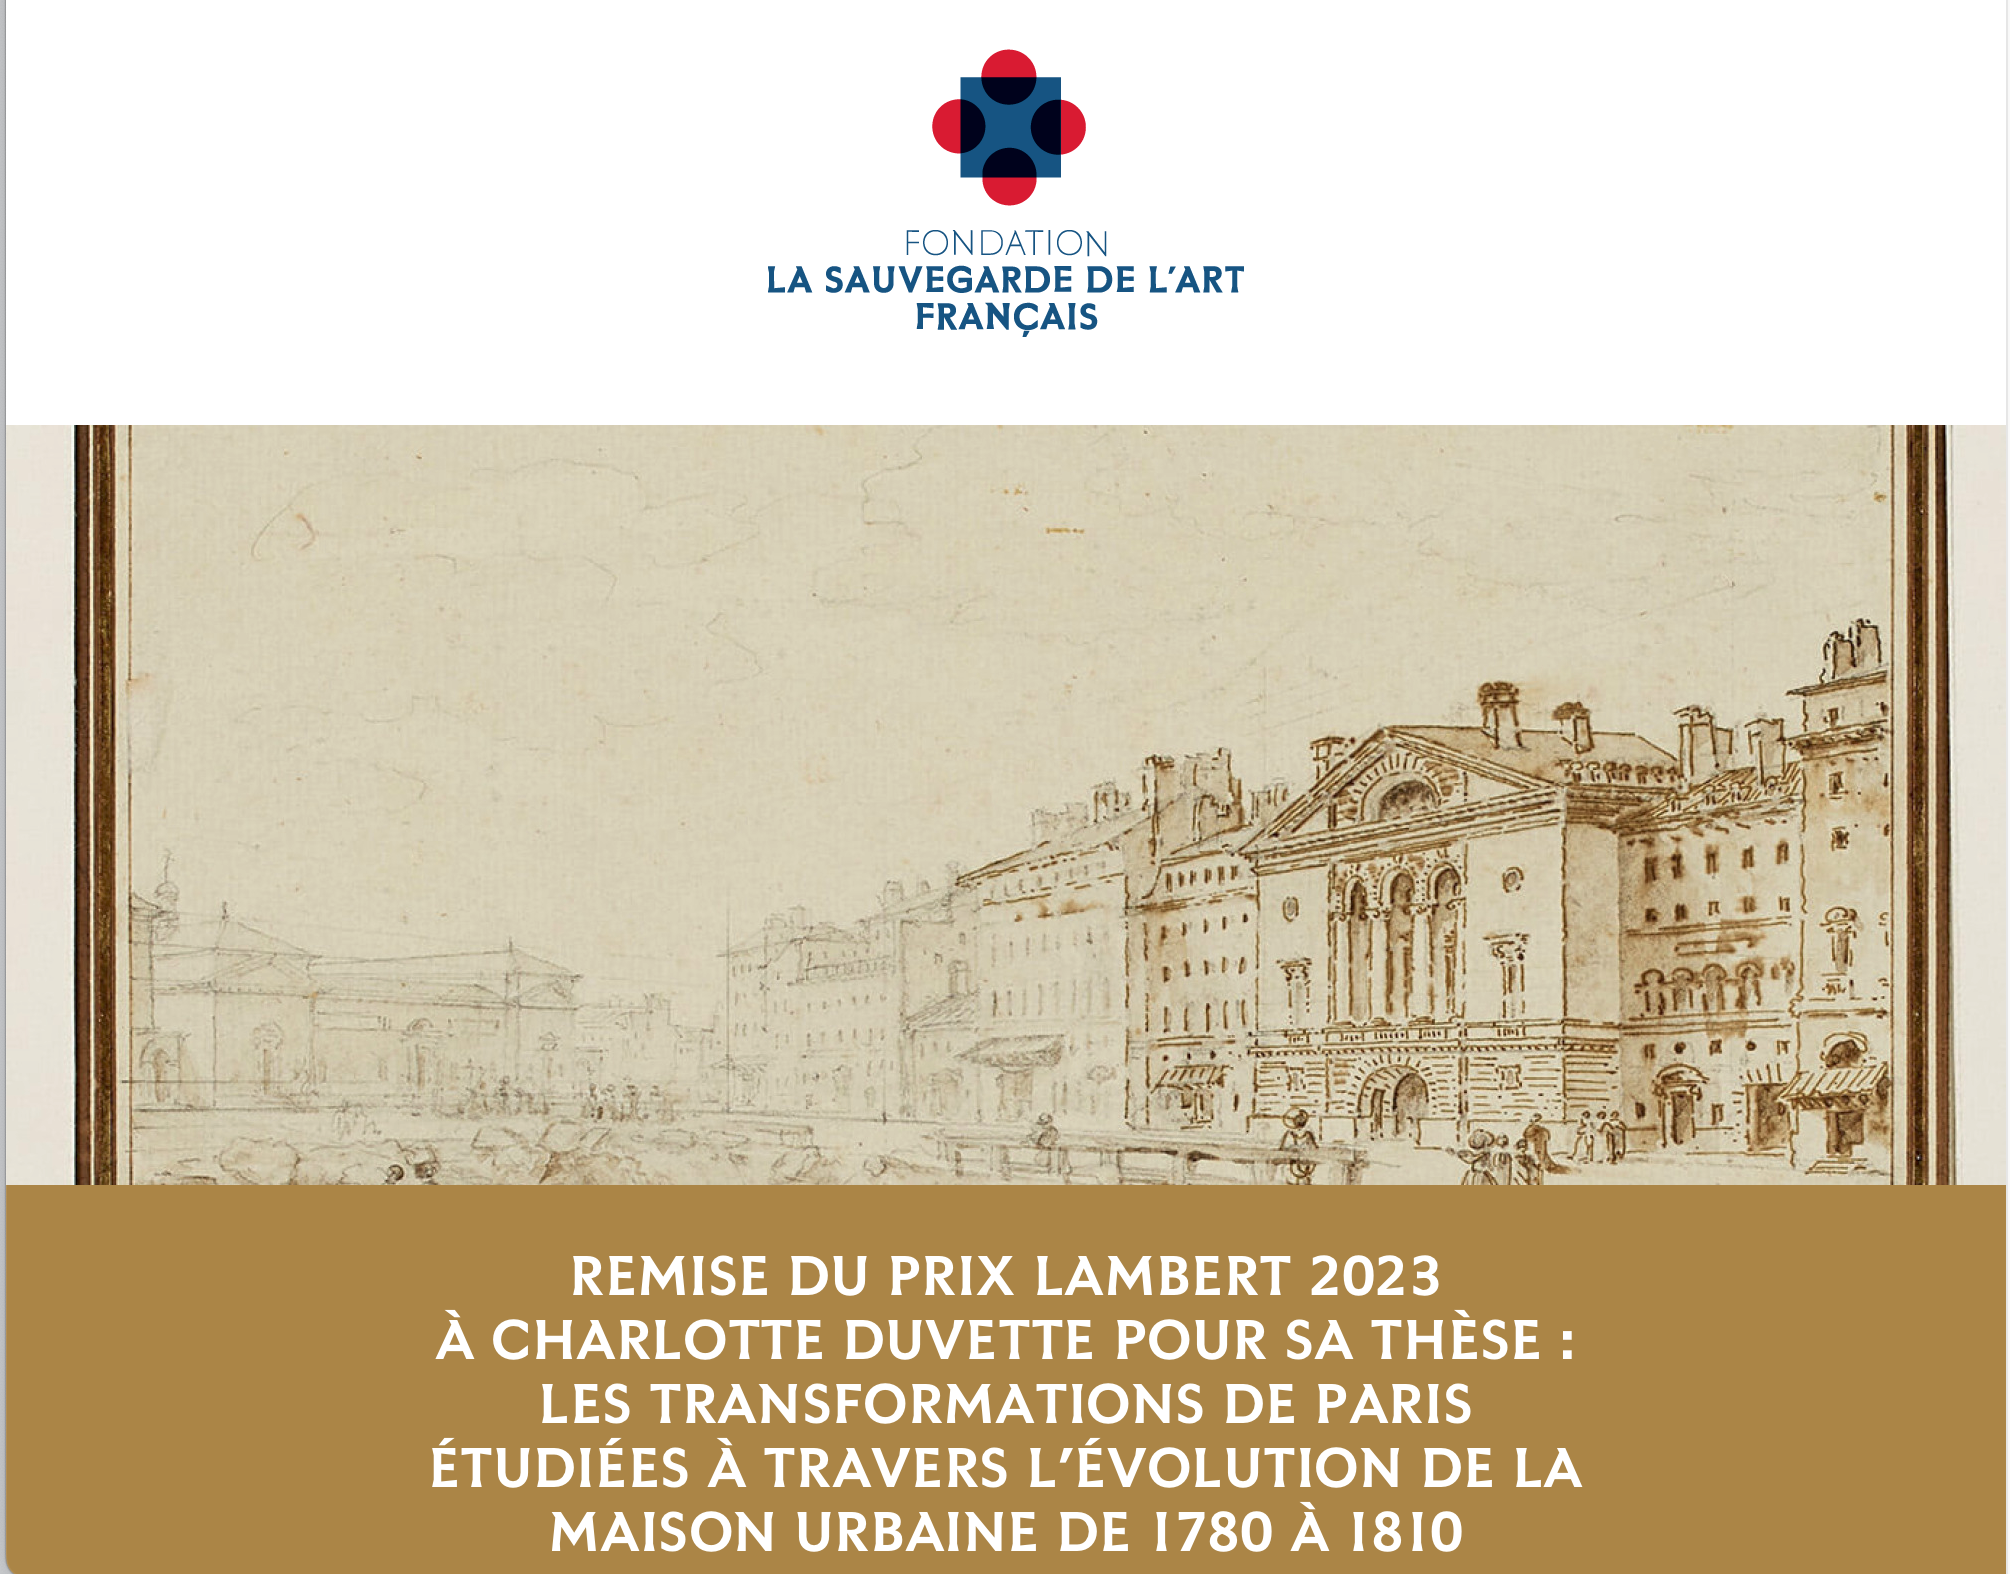 Les transformations de Paris étudiées à travers l'évolution de la maison urbaine de 1780 à 1810